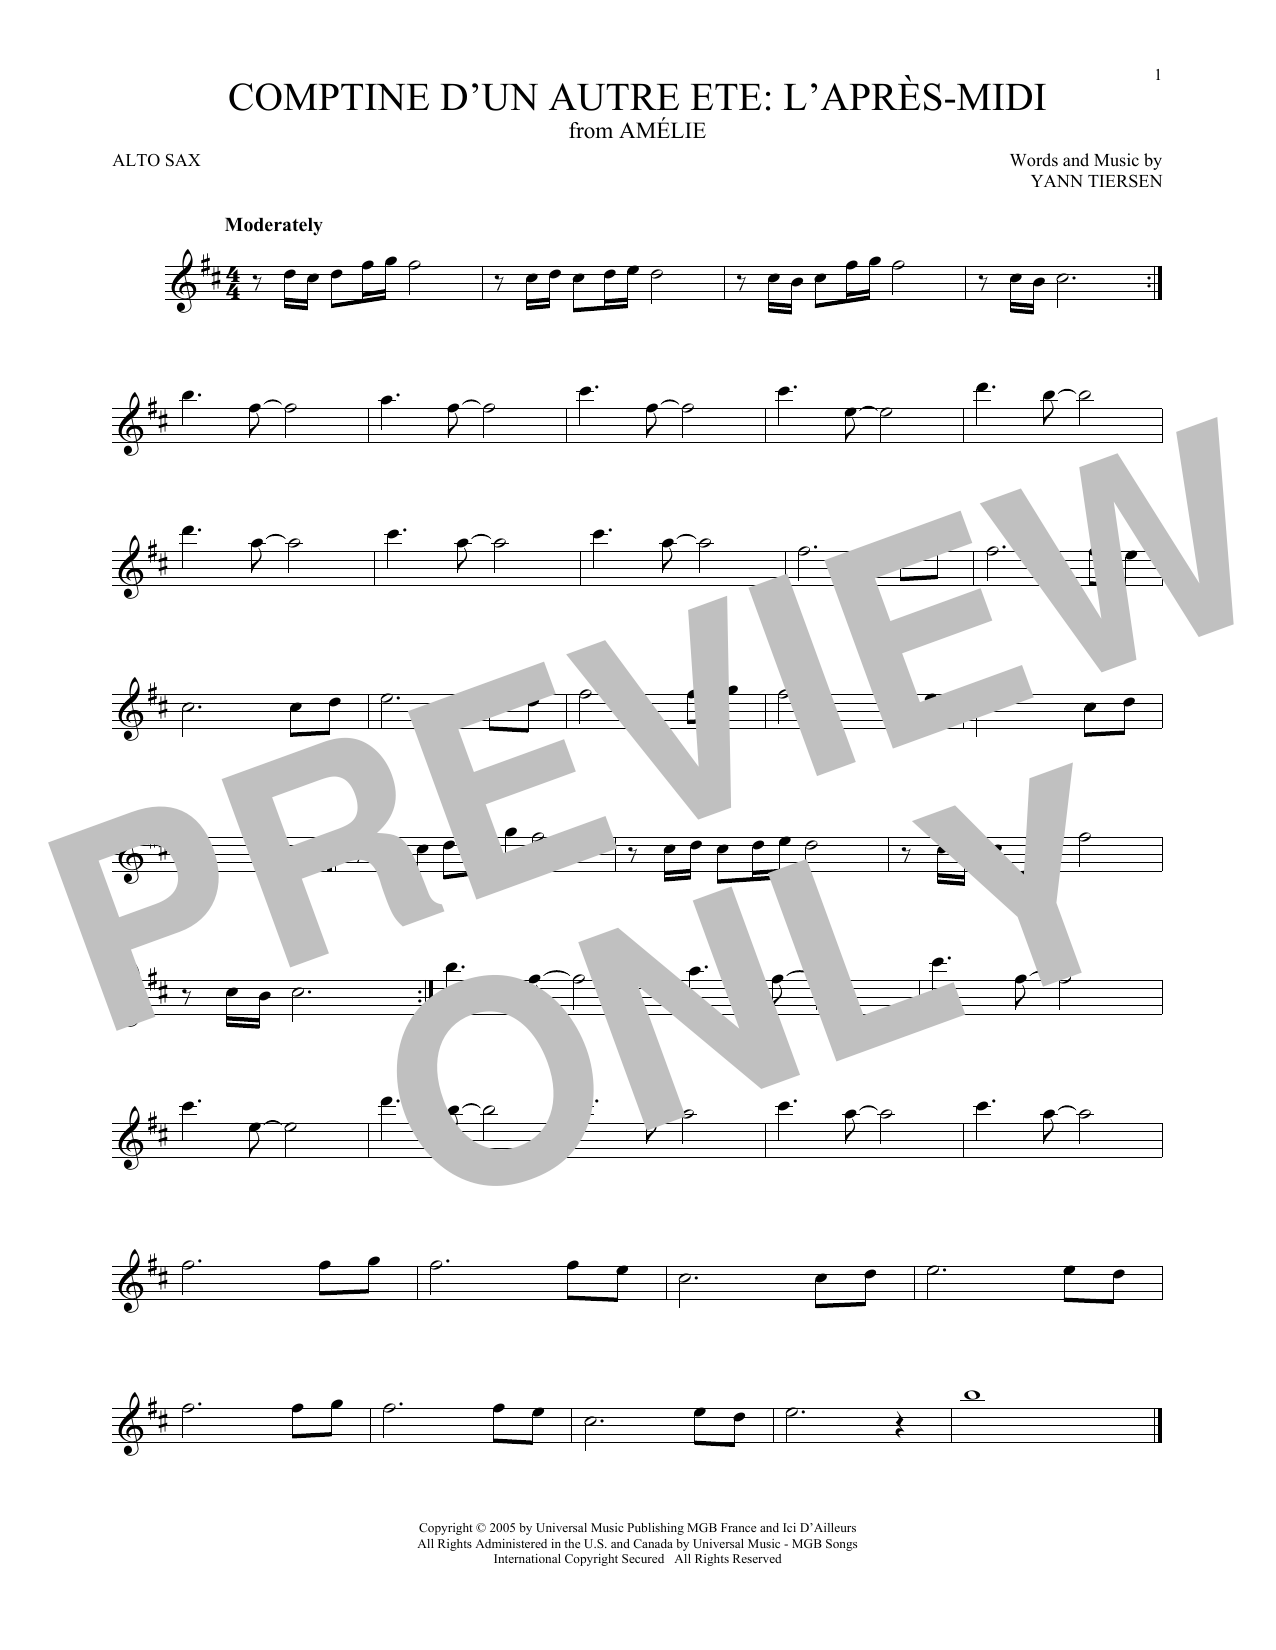 Yann Tiersen Comptine d'un autre été: L'après-midi (from Amelie) Sheet Music Notes & Chords for Violin Solo - Download or Print PDF